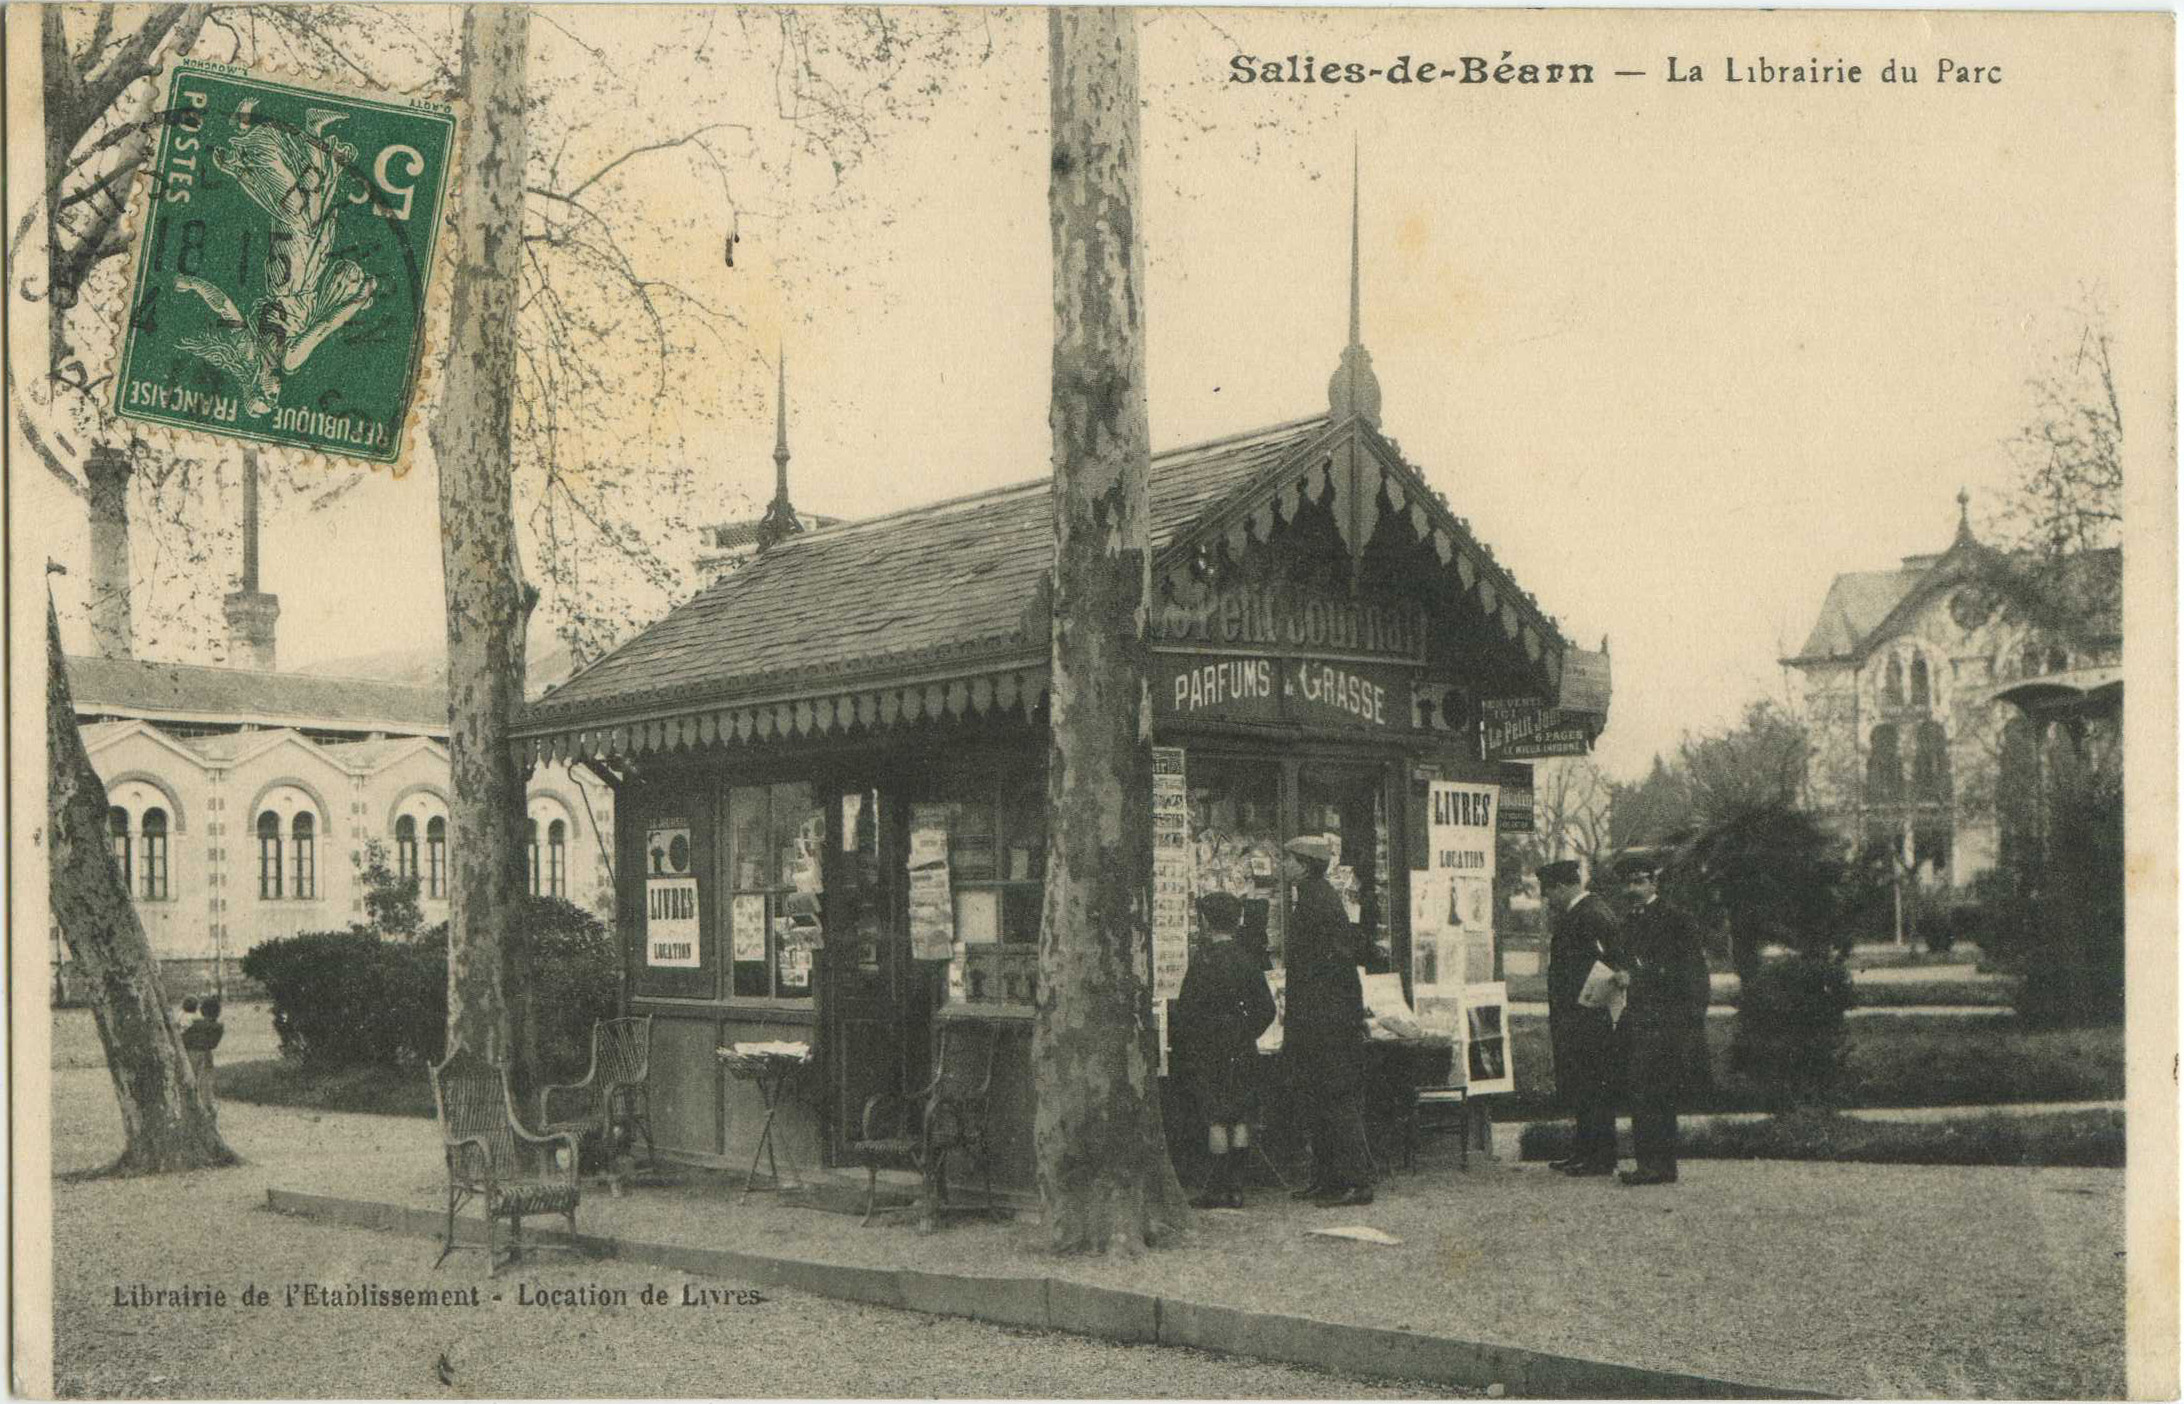 Salies-de-Béarn - La Librairie du Parc